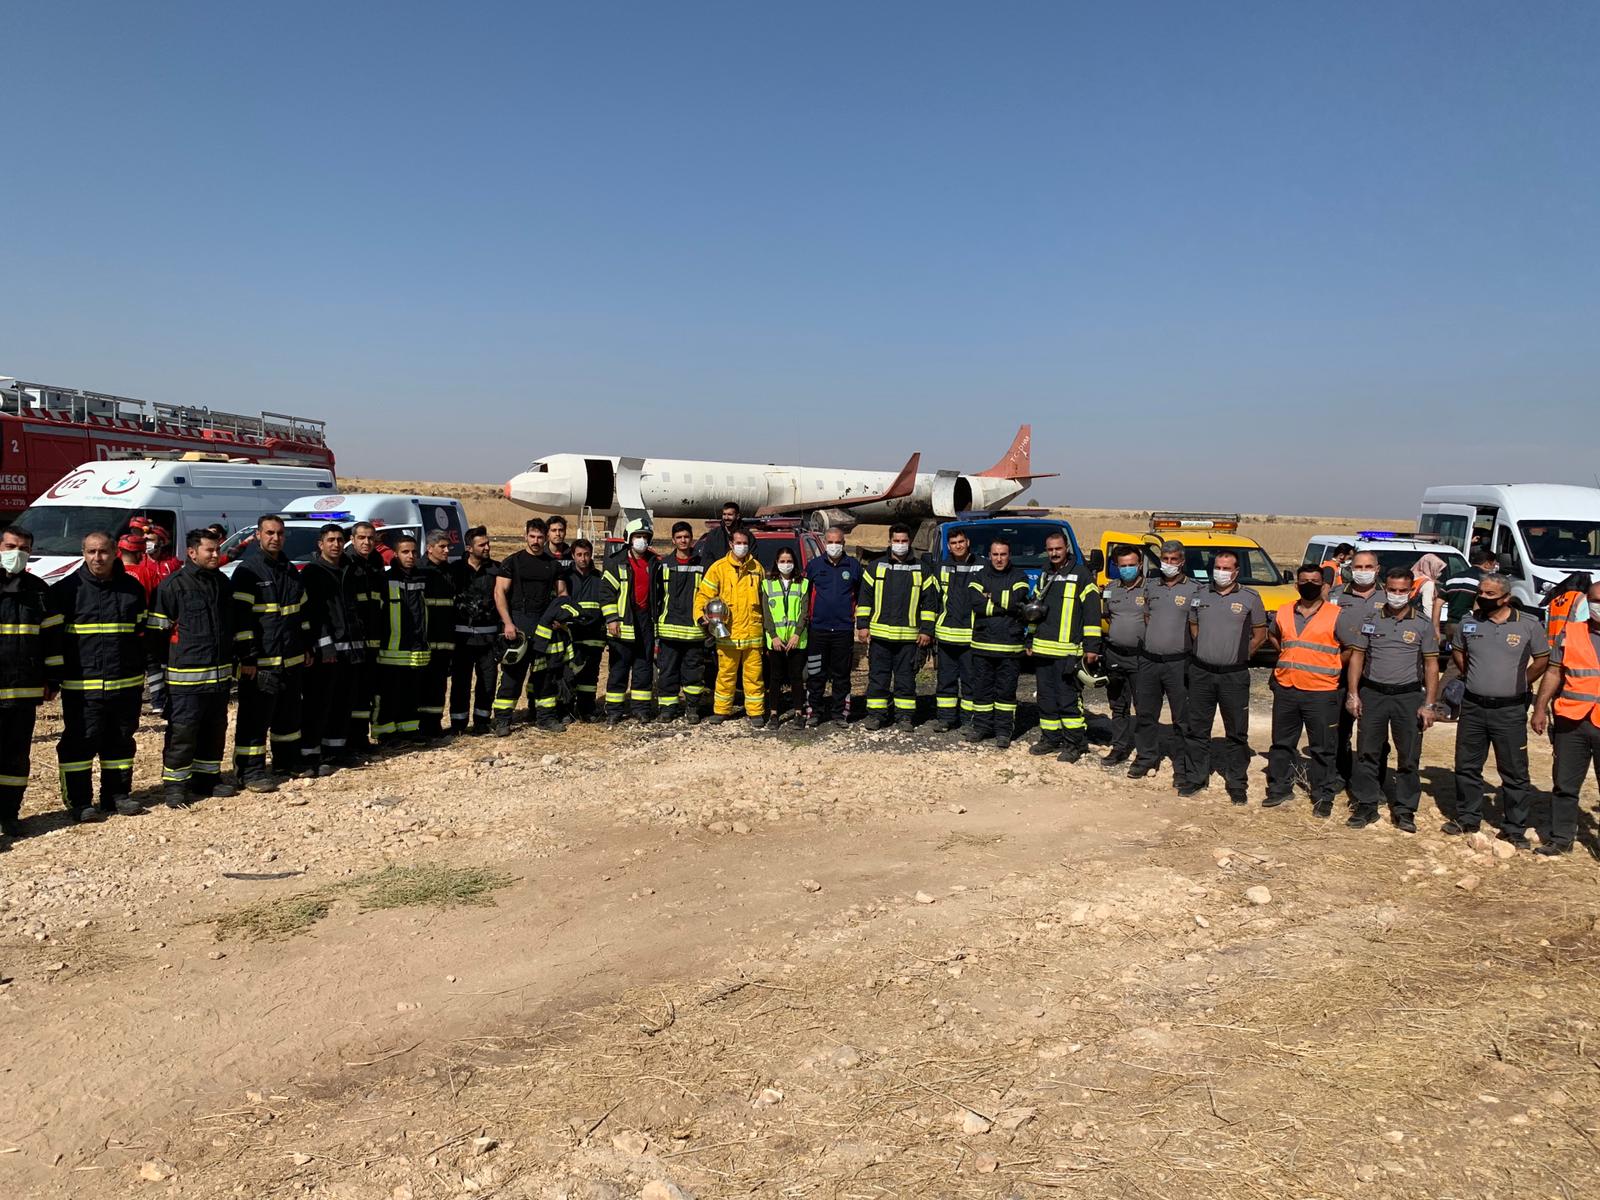 Şanlıurfa GAP Havalimanı 27 Ekim 2020 tarihinde Arama Kurtarma ve Yangınla Mücadele ( ARFF ) birimi koordinesinde kısmi acil durum tatbikatı gerçekleştirdi.